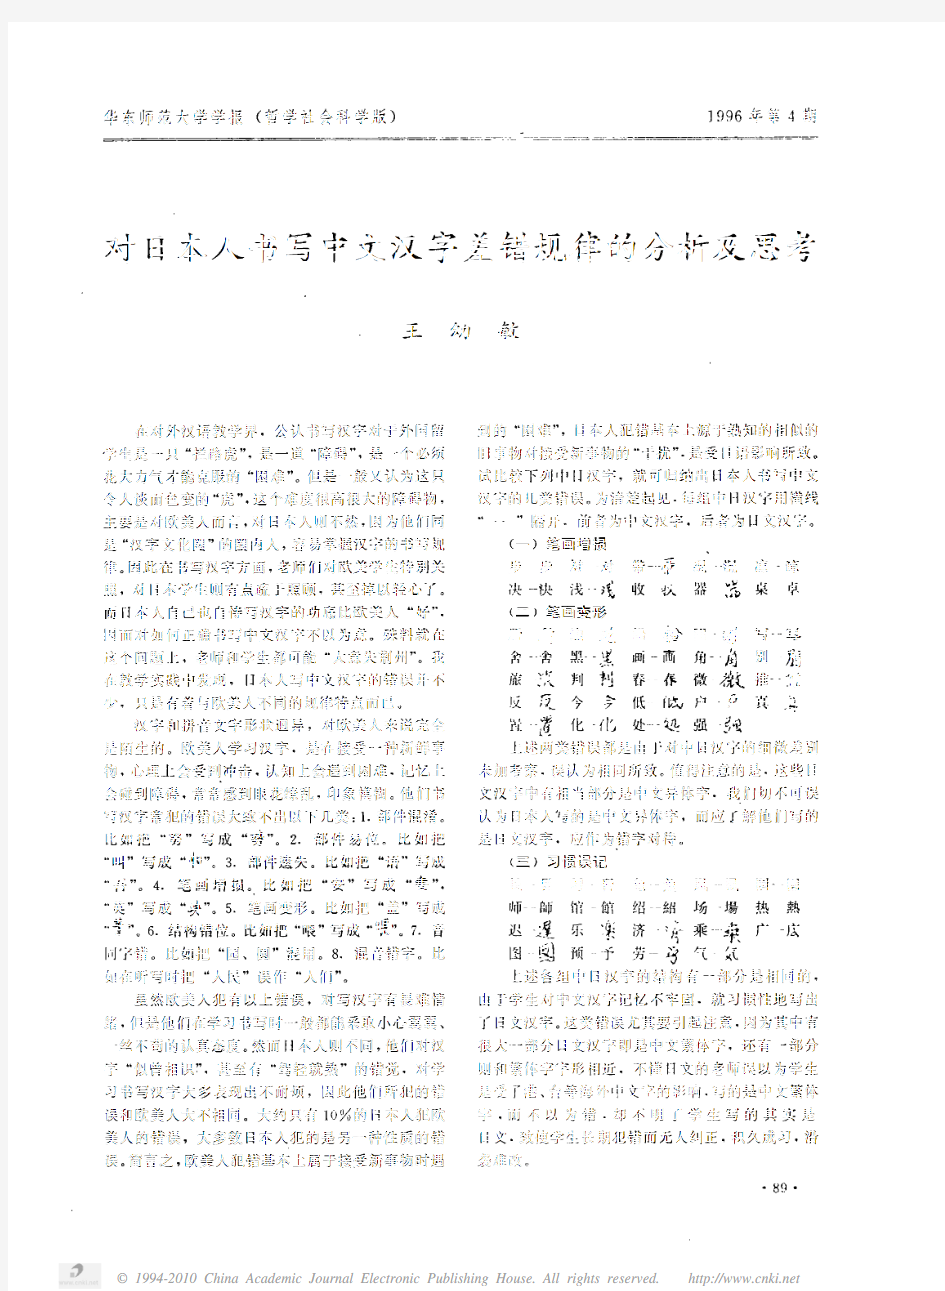 对日本人书写中文汉字差错规律的分析及思考